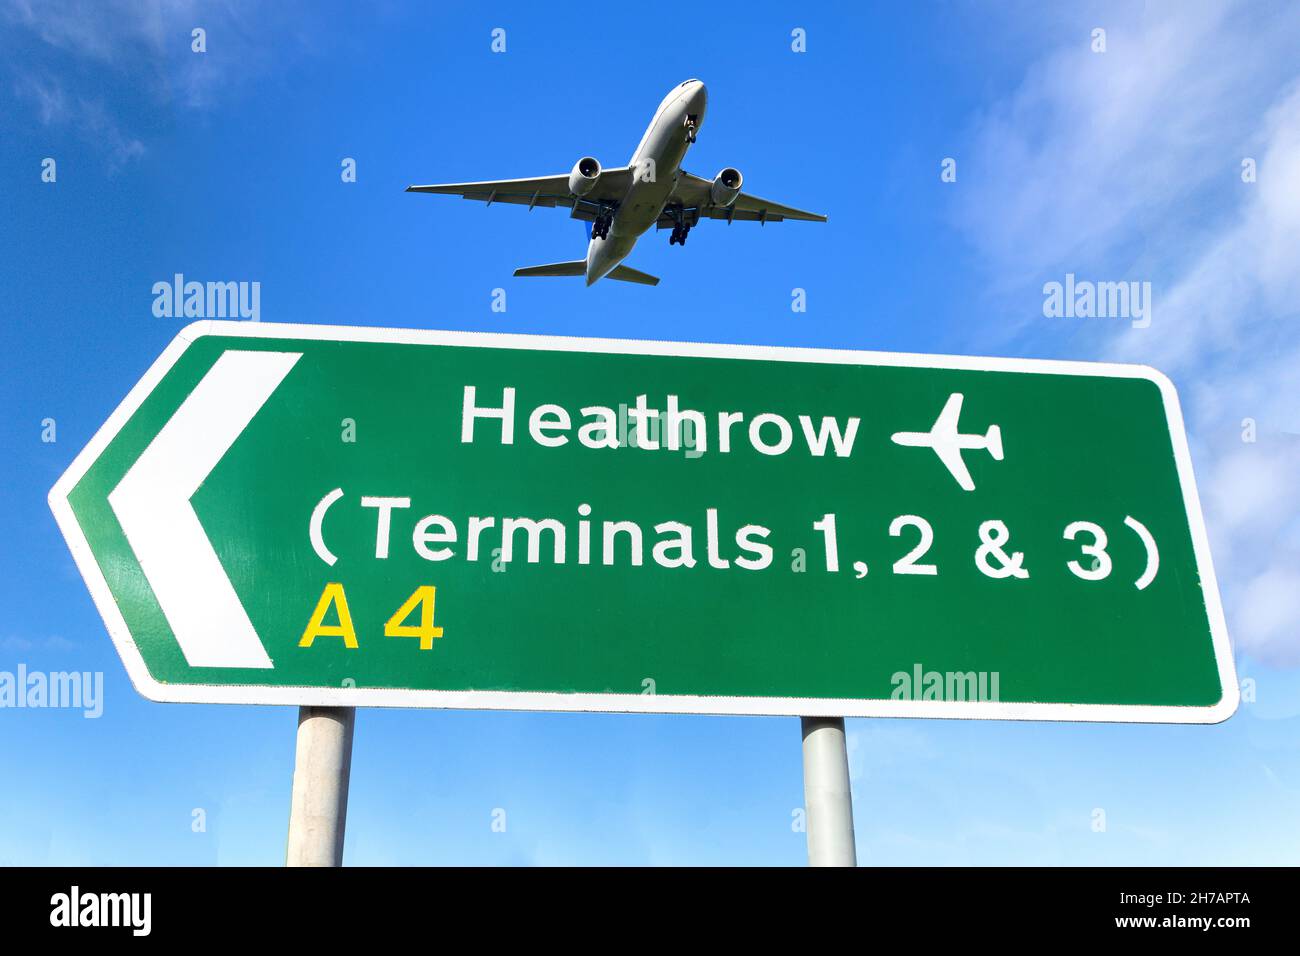 Avion survolant les terminaux de l'aéroport d'Heathrow panneau routier, Cranford, London Borough of Hounslow, Greater London, Angleterre, Royaume-Uni Banque D'Images